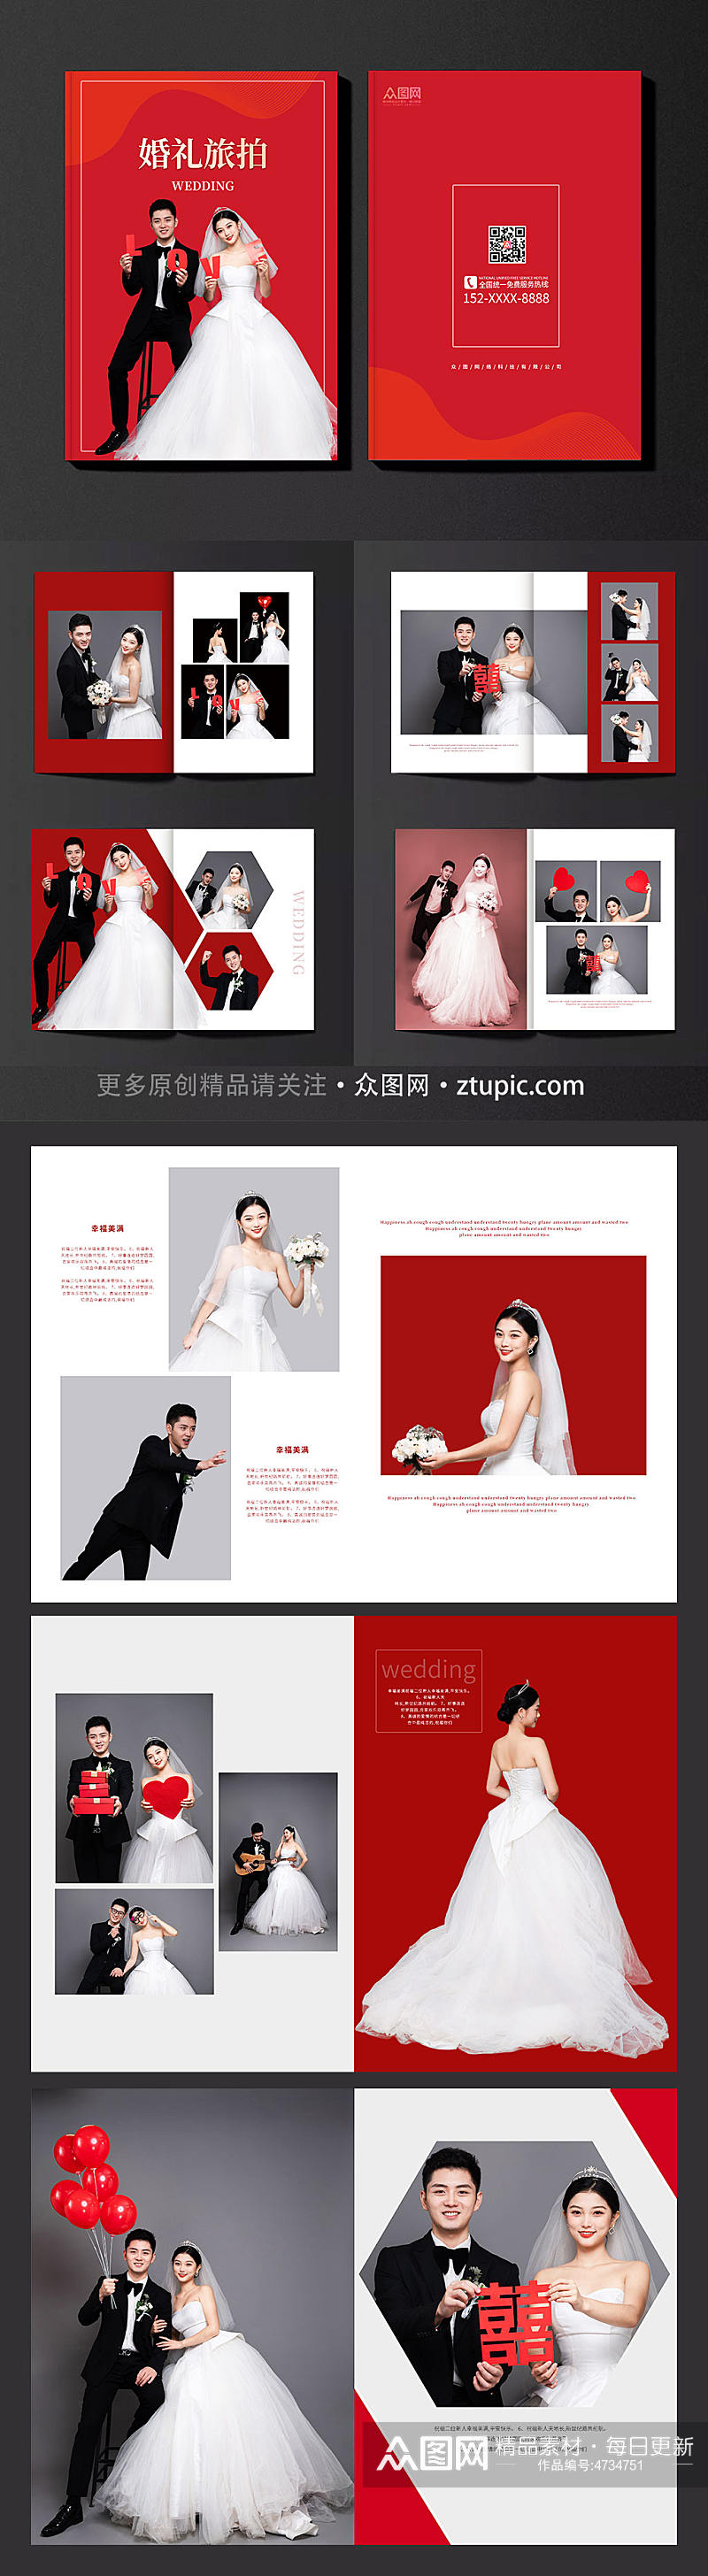 红色背景大气旅拍婚礼宣传画册素材